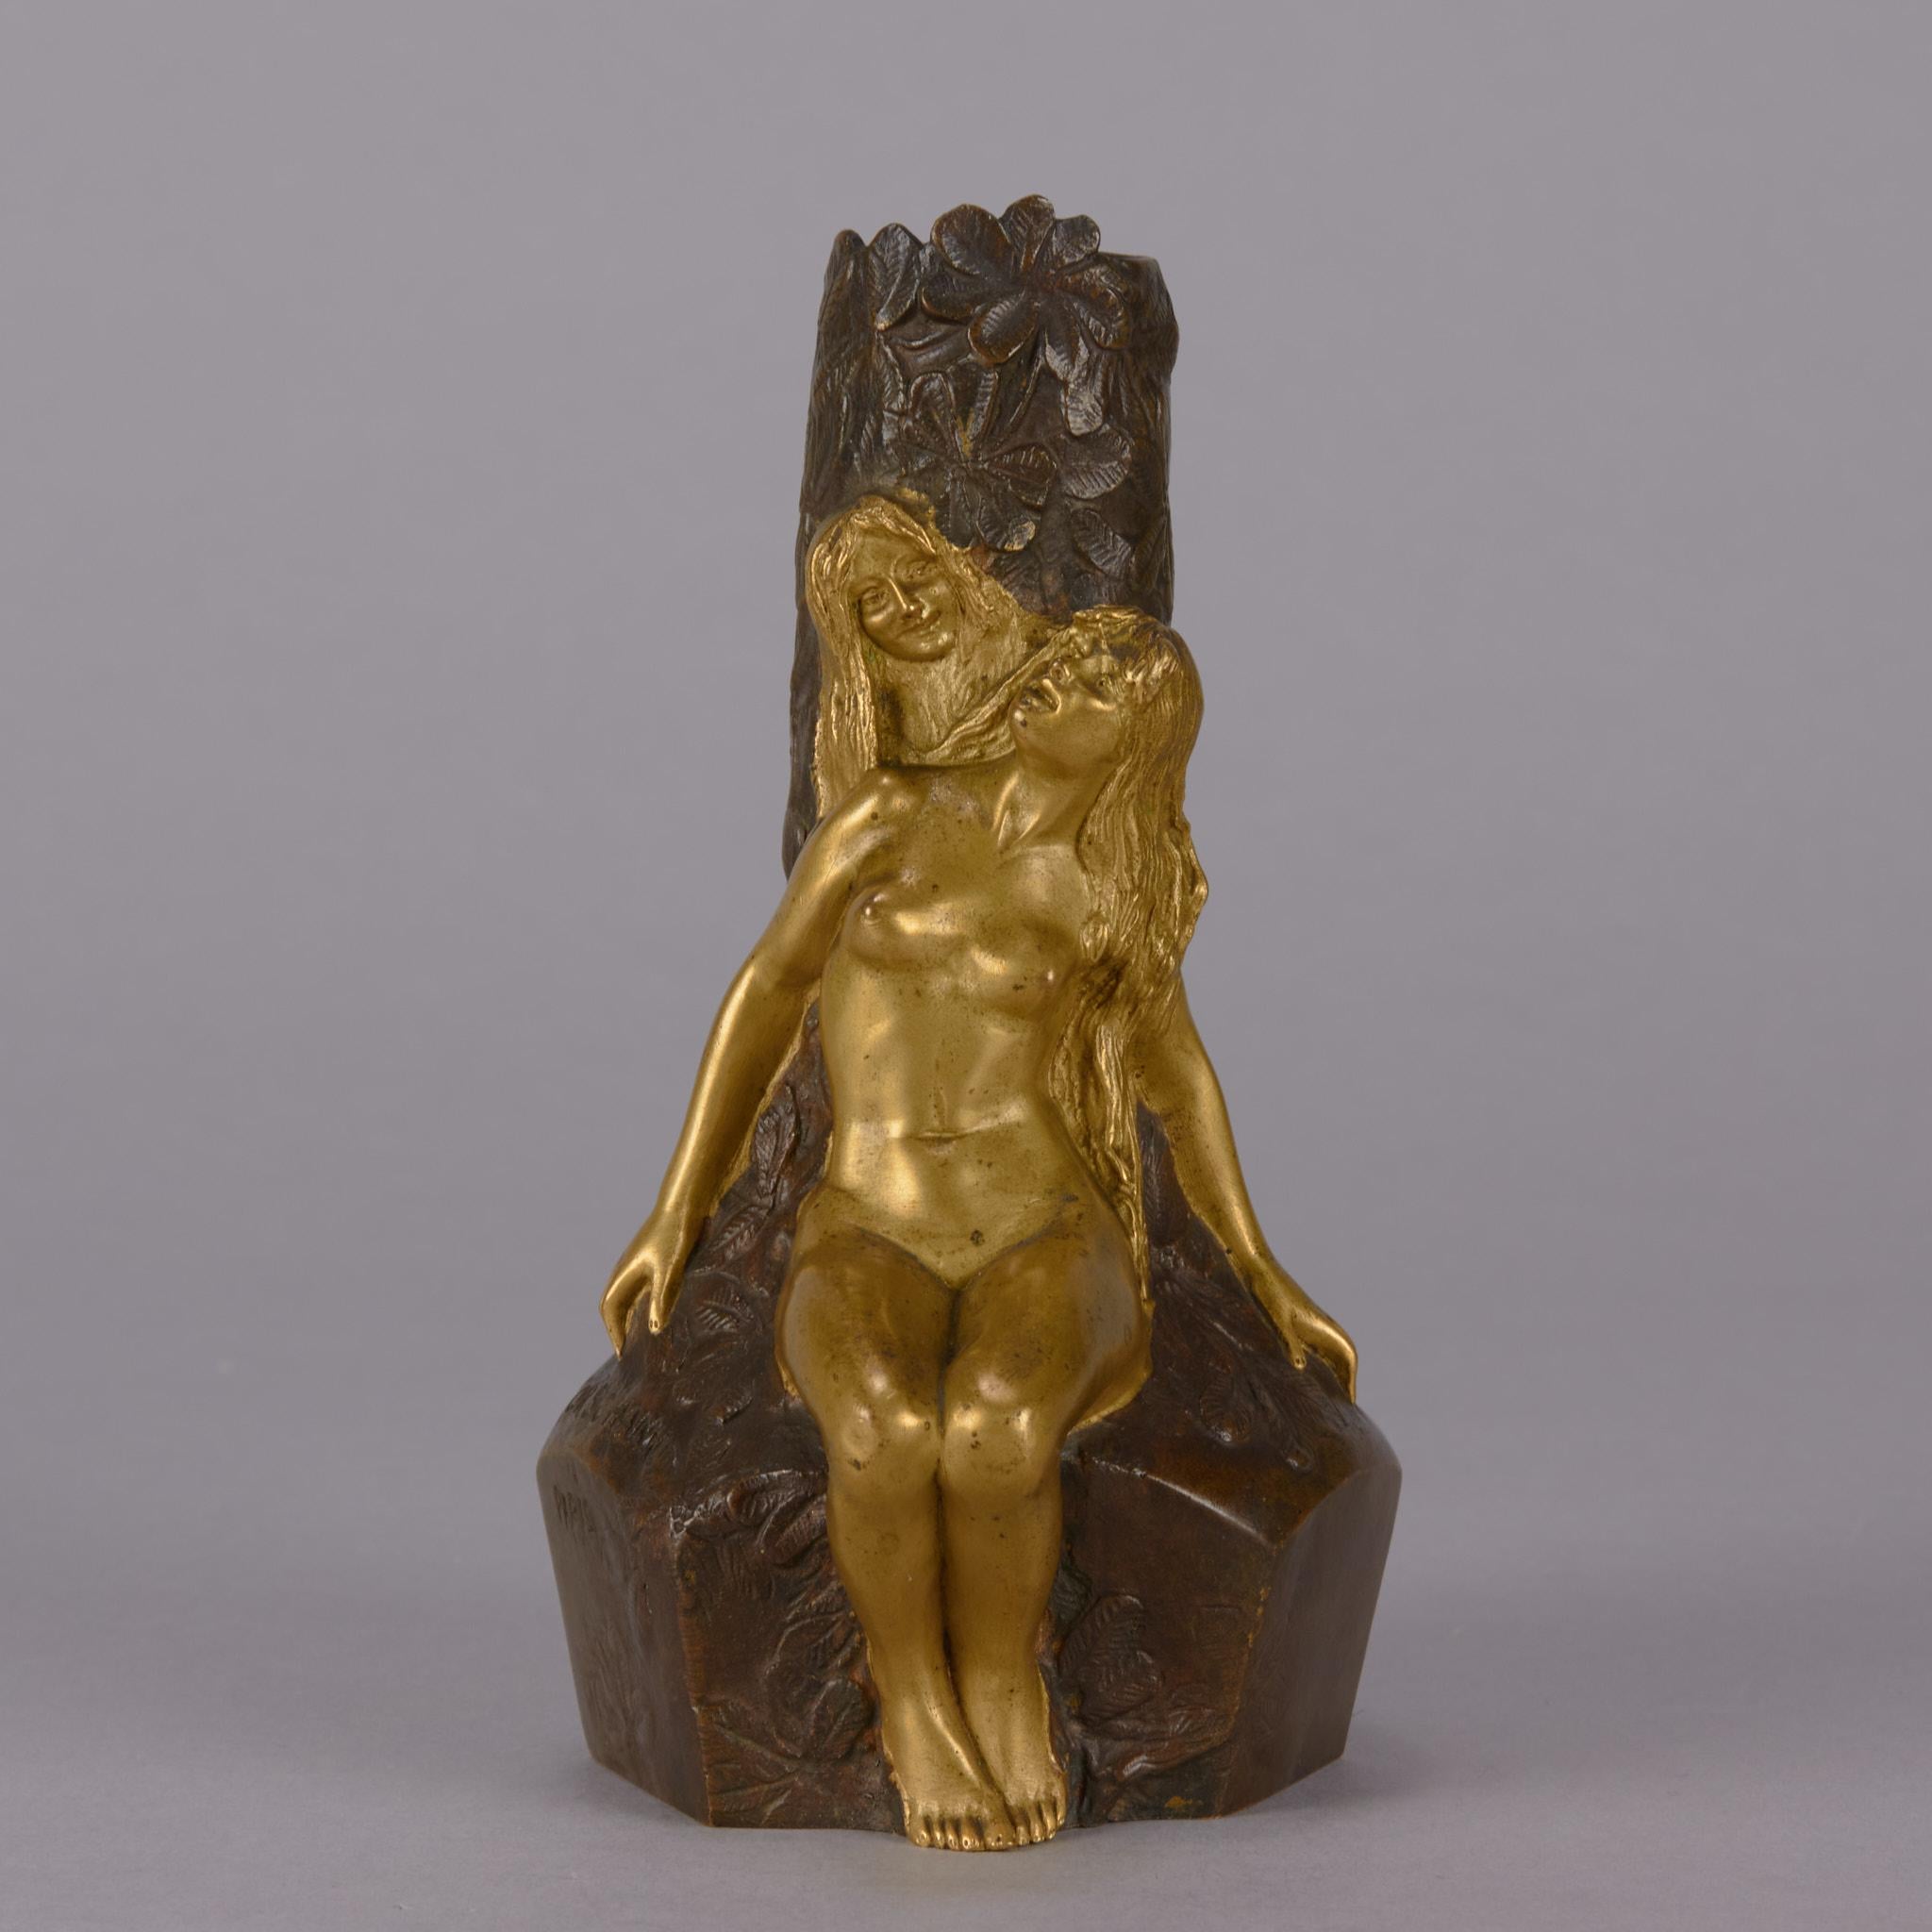 Un très beau vase en bronze Art Nouveau de la fin du 19ème siècle décoré de deux figures féminines en bronze doré assises sur une souche d'arbre. La surface du vase avec d'excellents détails et une couleur très fine, signé Korschann et avec la